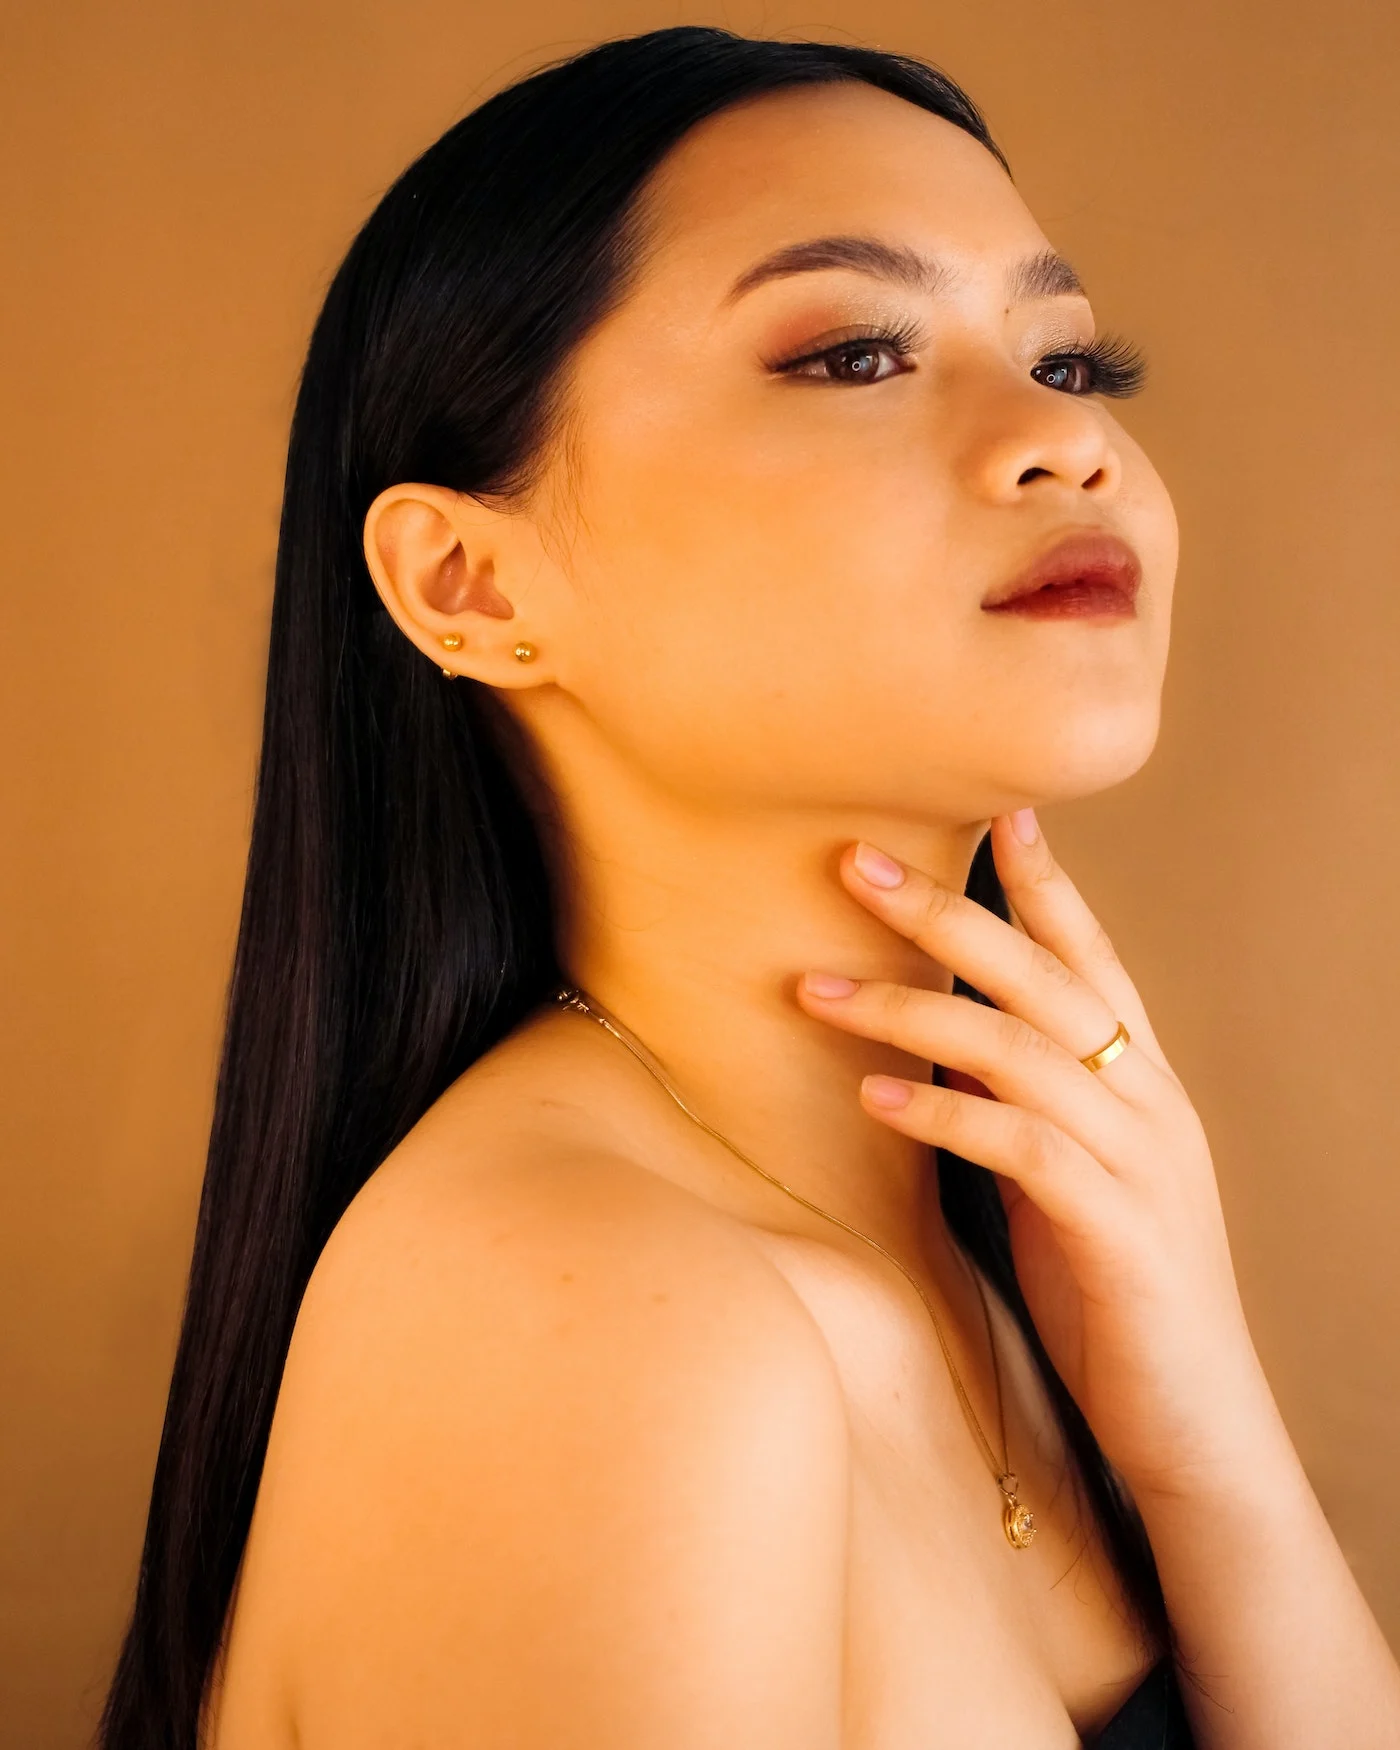 asian woman wearing hypoallergenic jewelry